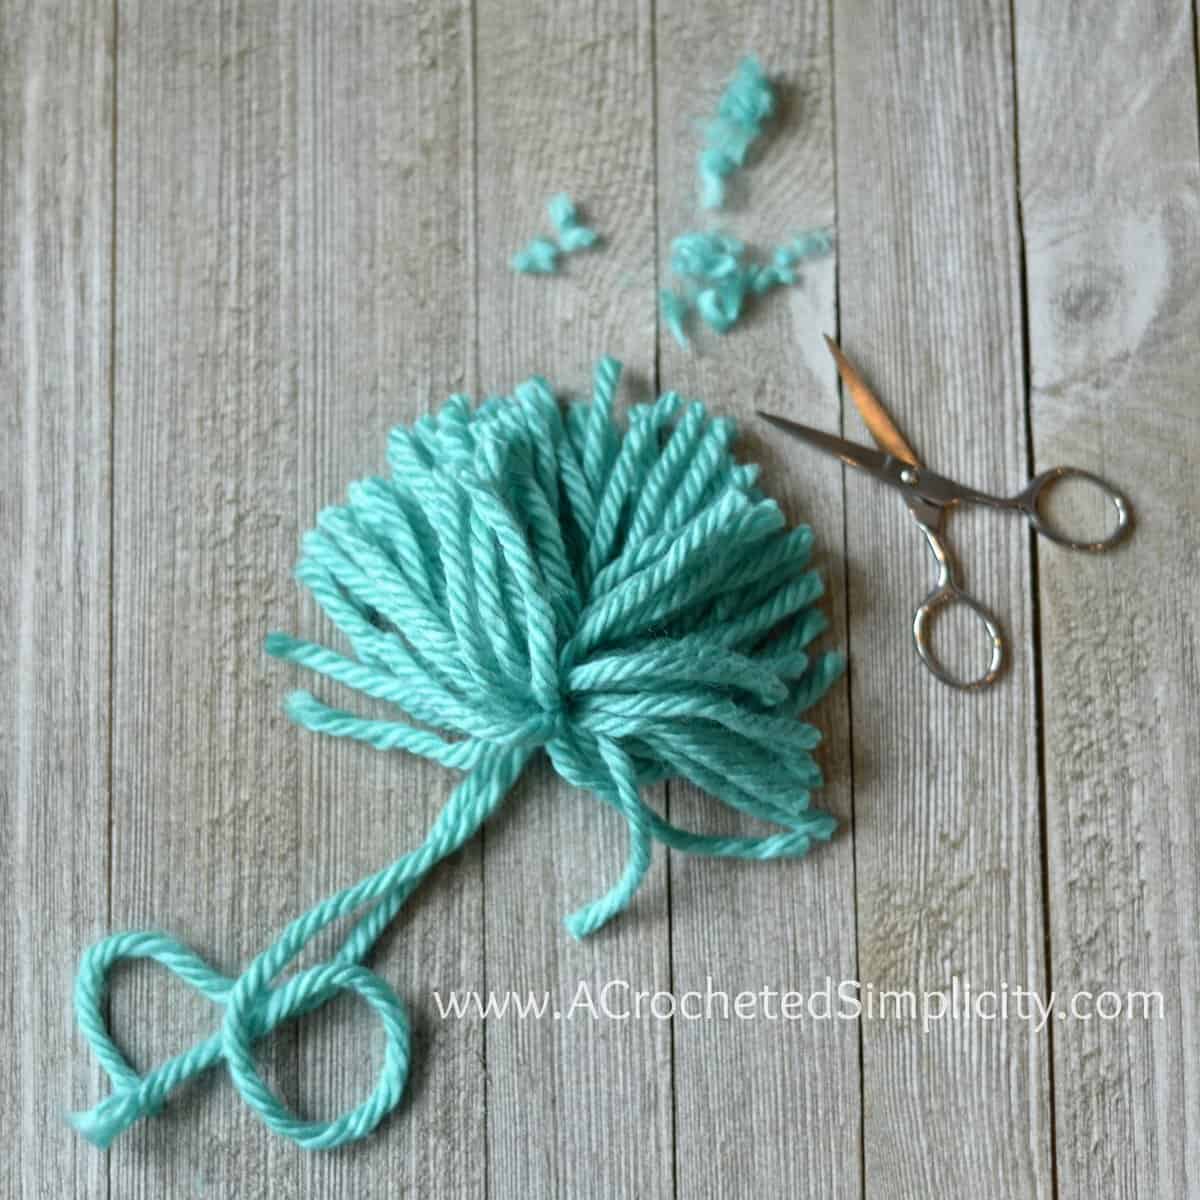 How to Make a Pom Pom - A Crocheted